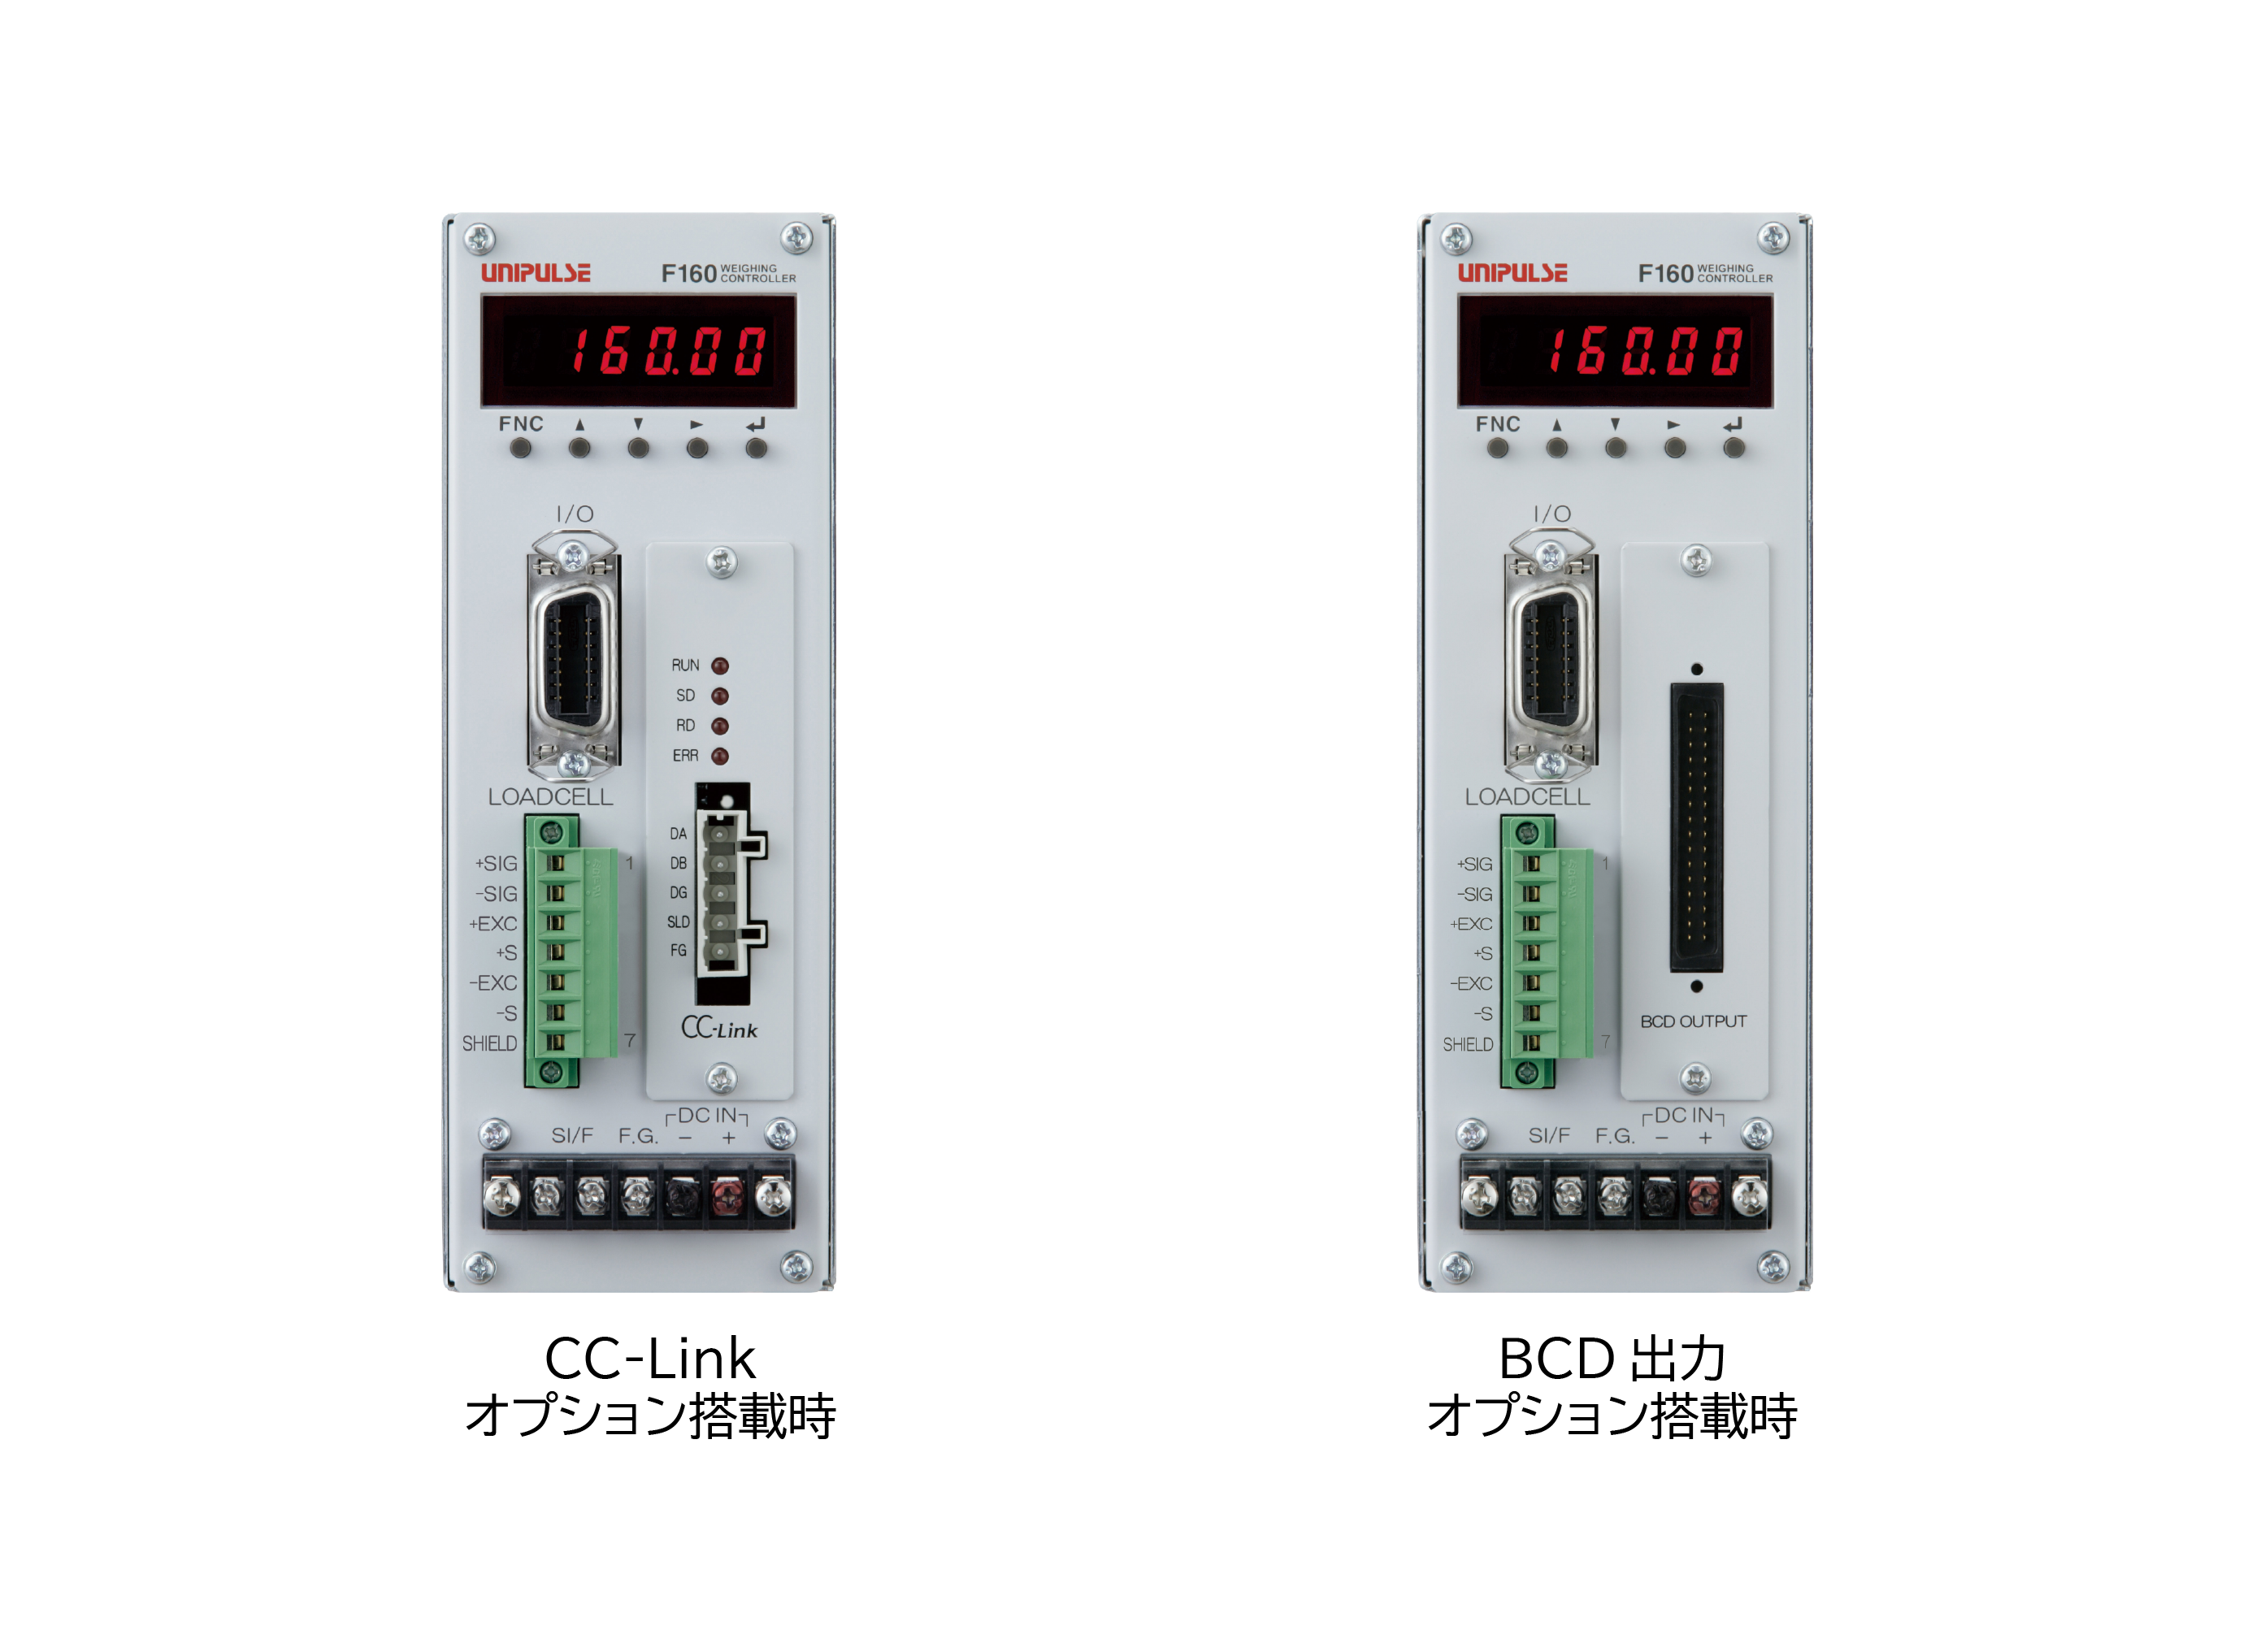 ロードセル omron ロードセル、mVメータ BCD+トランジスタ(正式製品型番:K3HB-VLC-BBCD1 AC100-240) 材料、資材